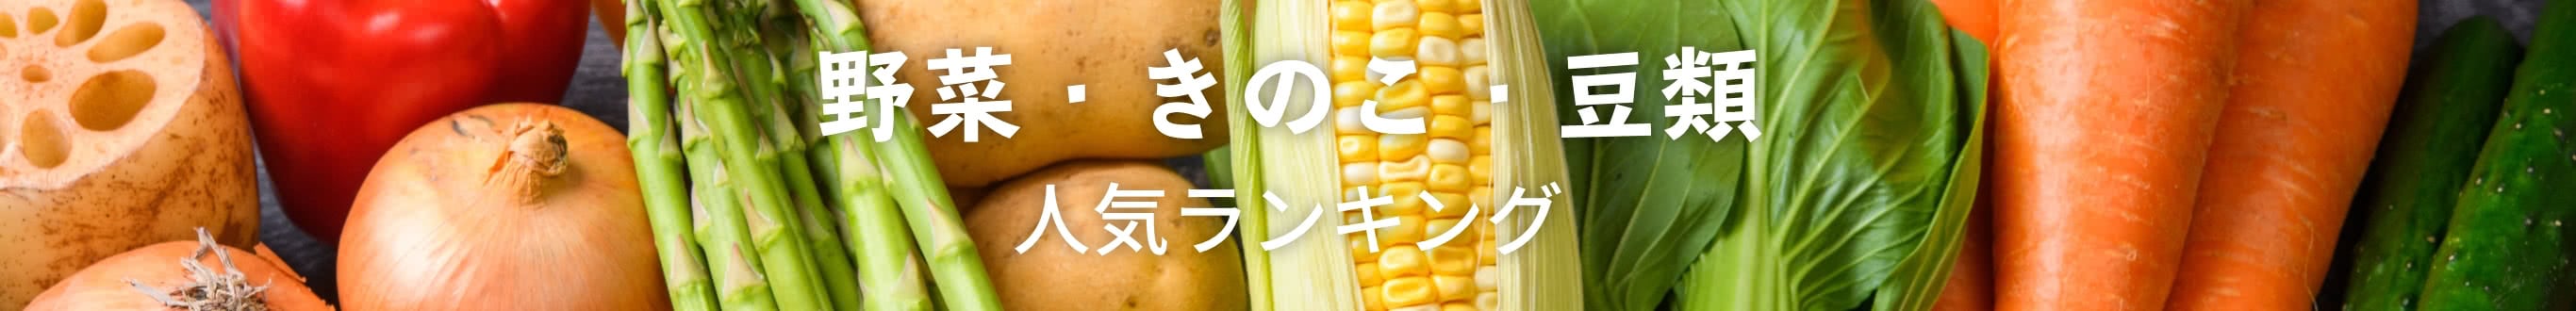 野菜・きのこ・豆類人気ランキング